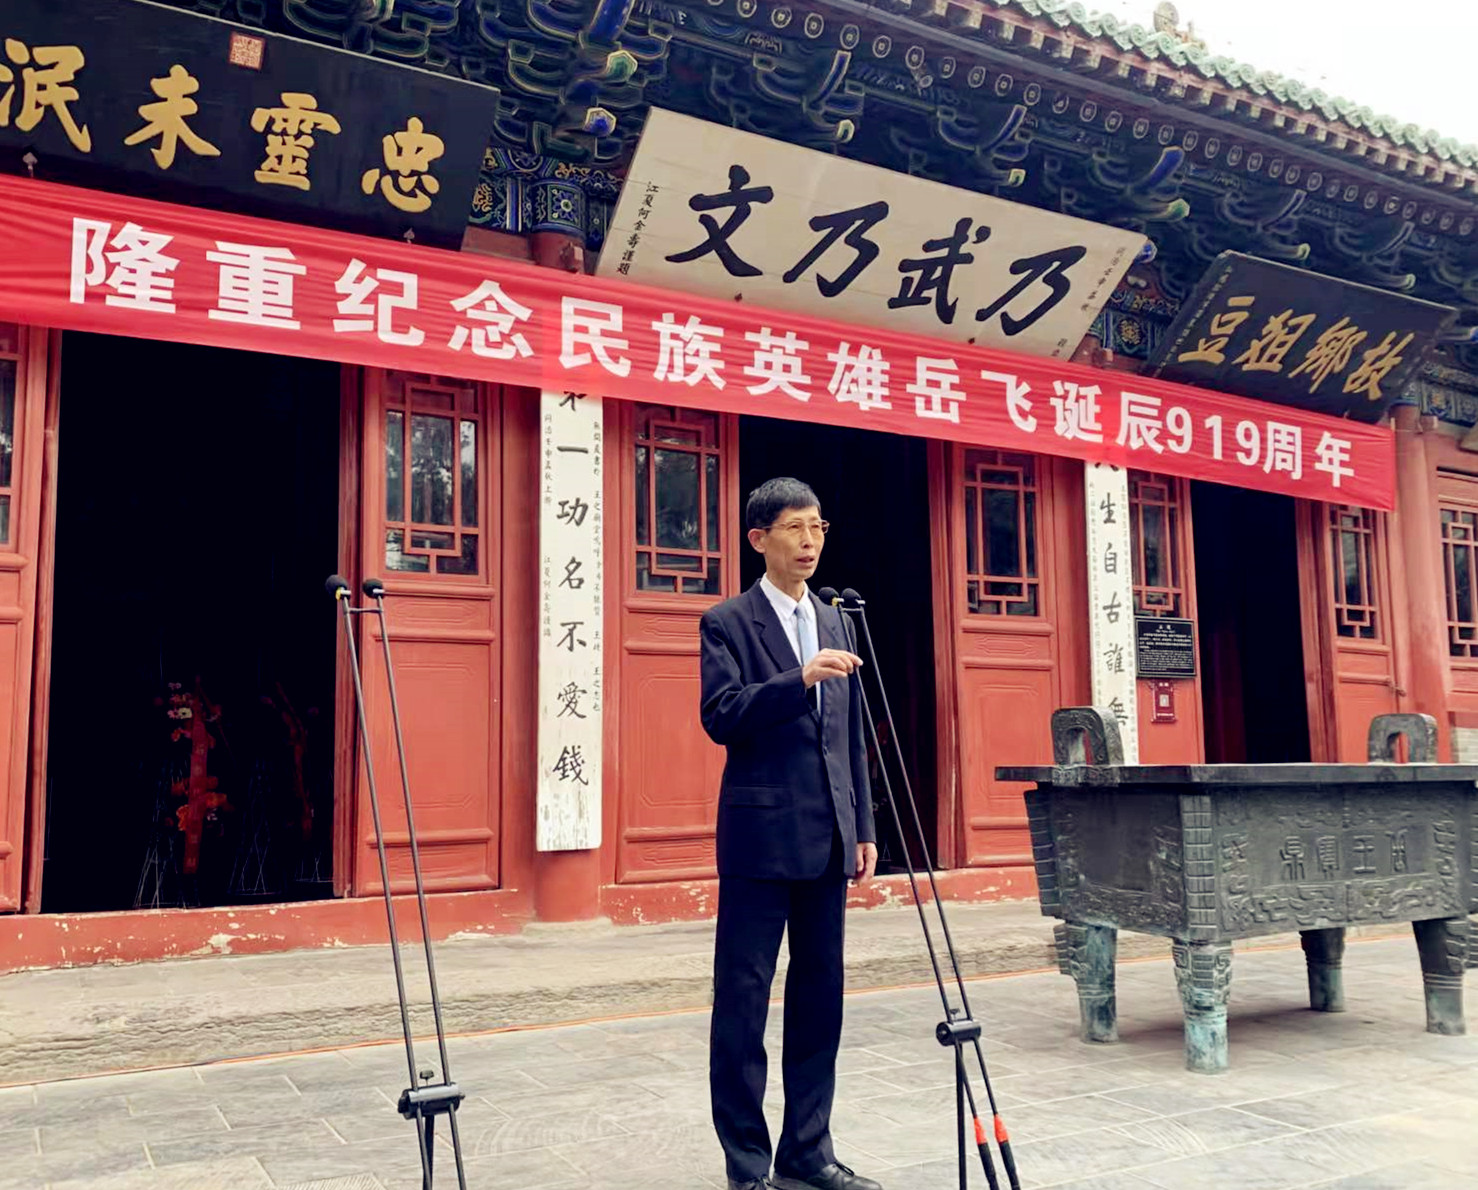 岳庆平教授出席汤阴纪念岳飞诞辰919周年活动 并发表主旨演讲